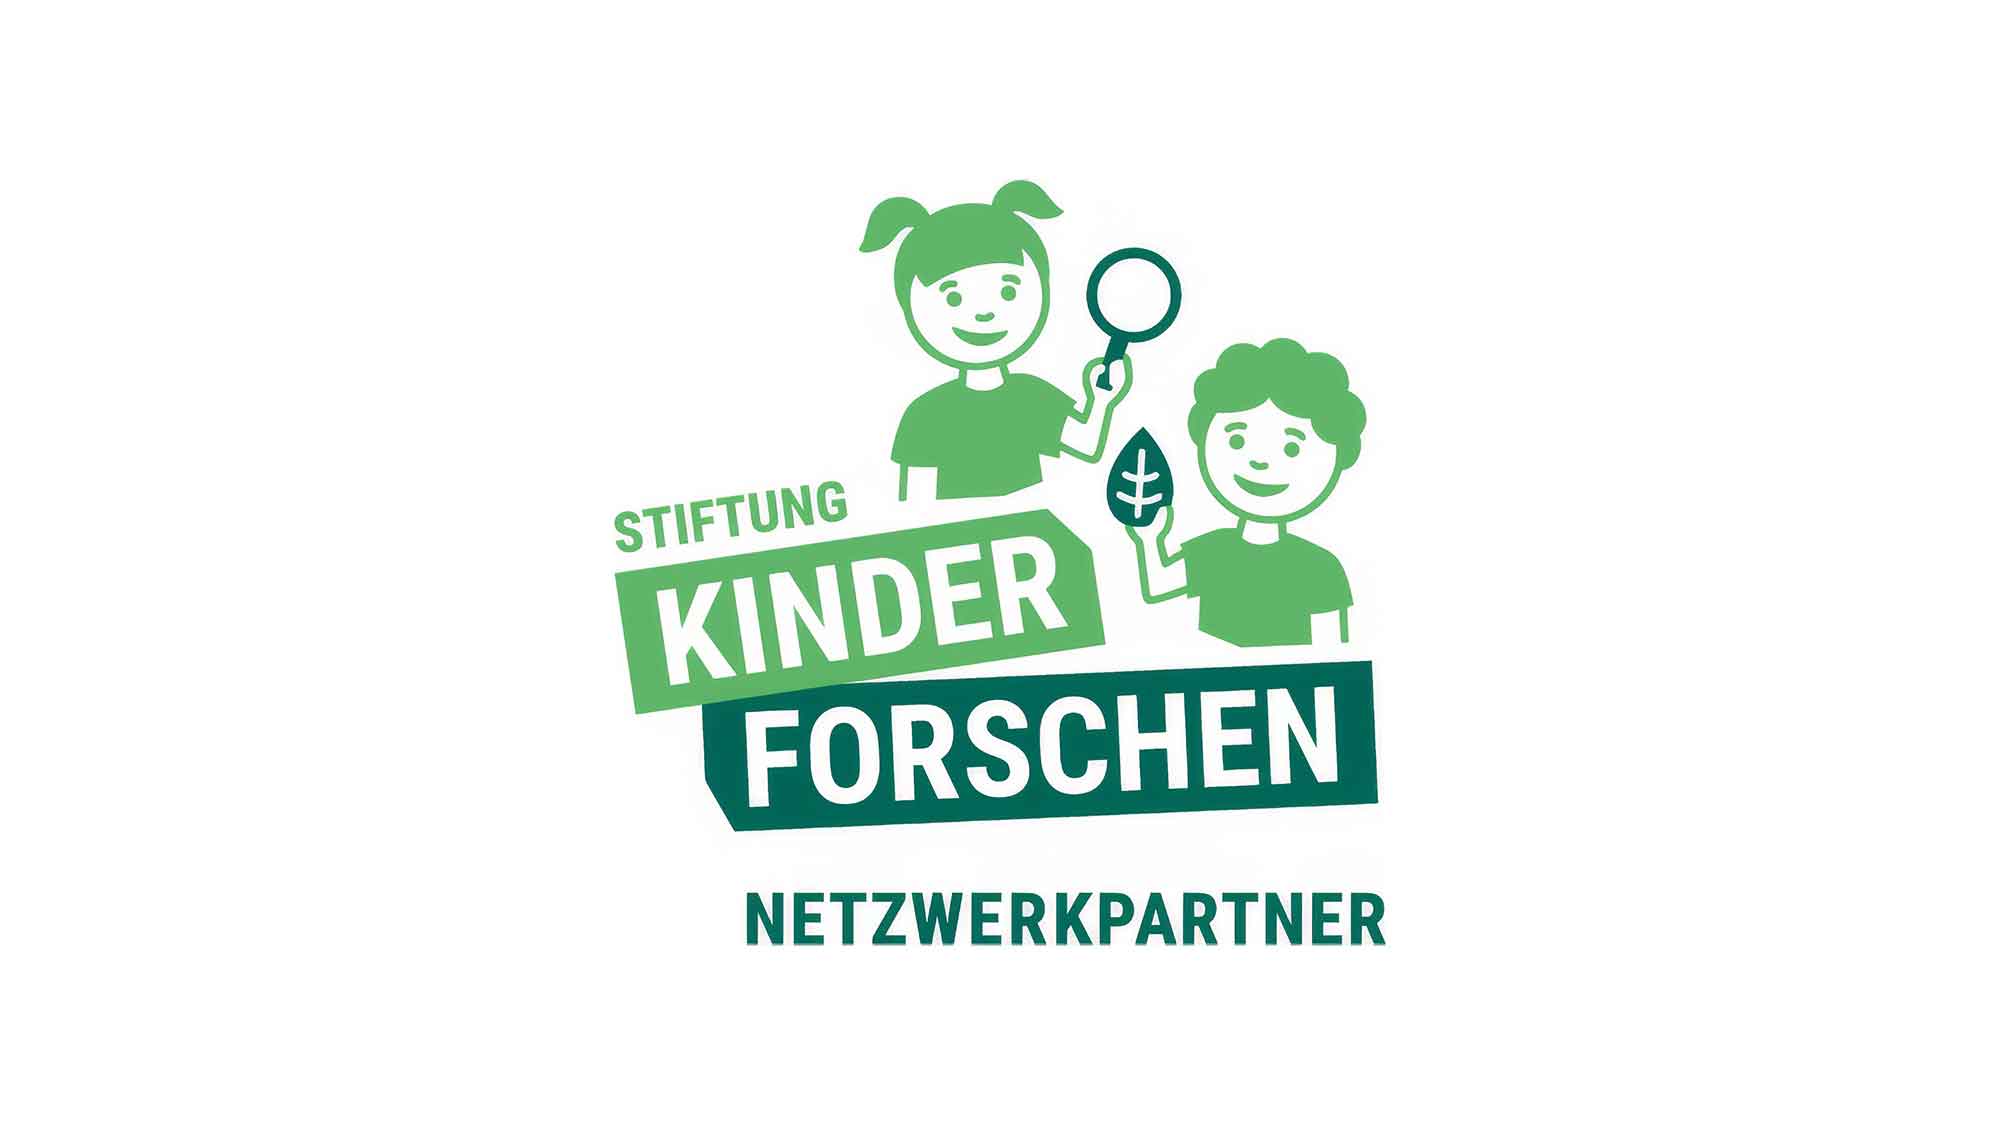 Stiftung Kinder forschen: Jetzt kostenloses Aktionsmaterial bestellen